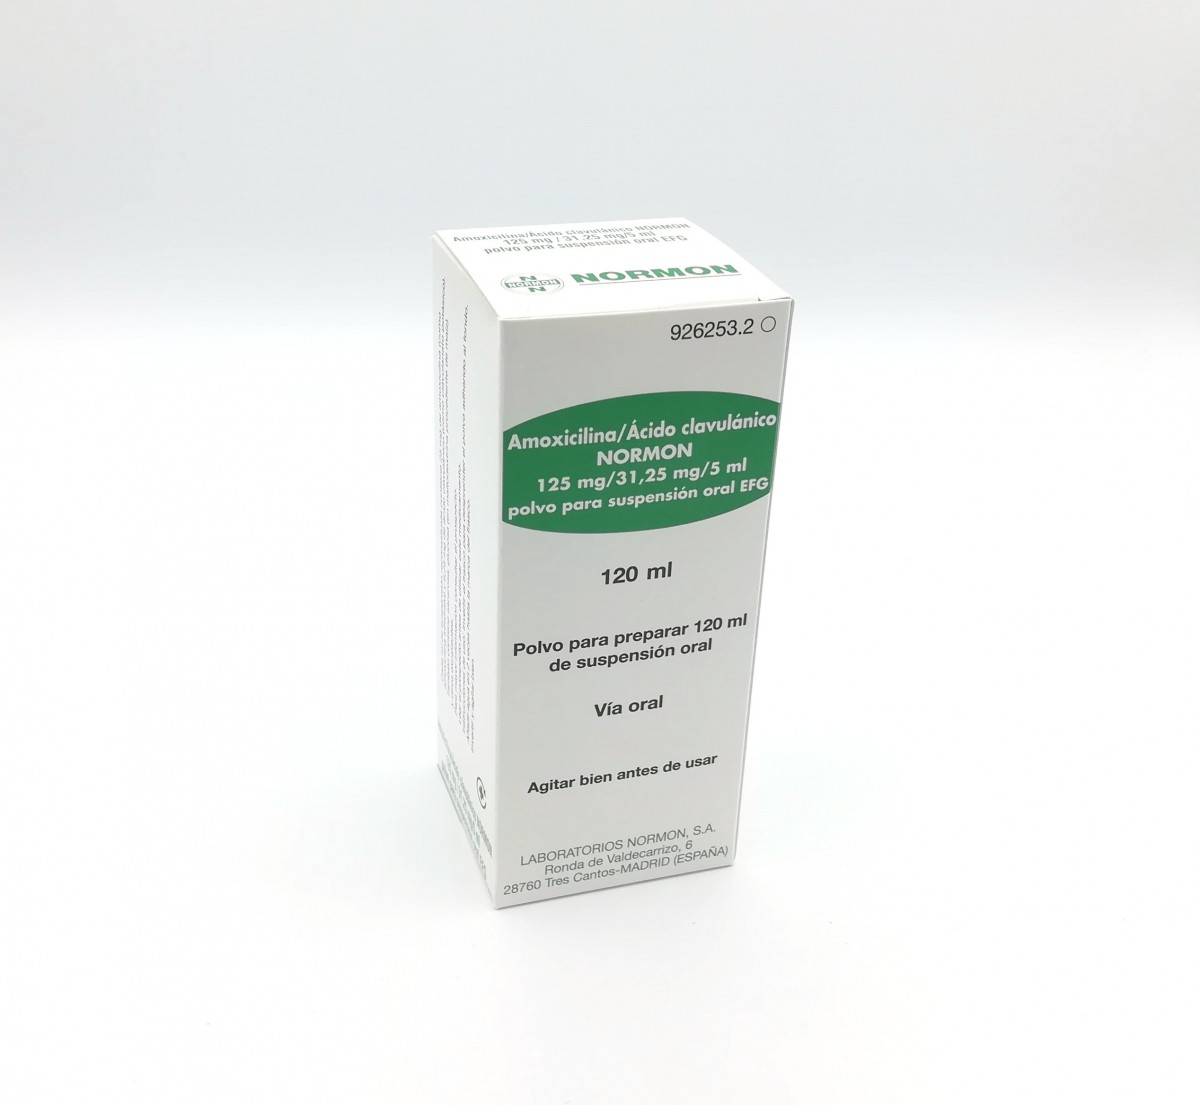 AMOXICILINA/ACIDO CLAVULANICO NORMON 125 mg/31,25 mg/5 ml POLVO PARA SUSPENSION ORAL EFG, 1 frasco de 60 ml fotografía del envase.